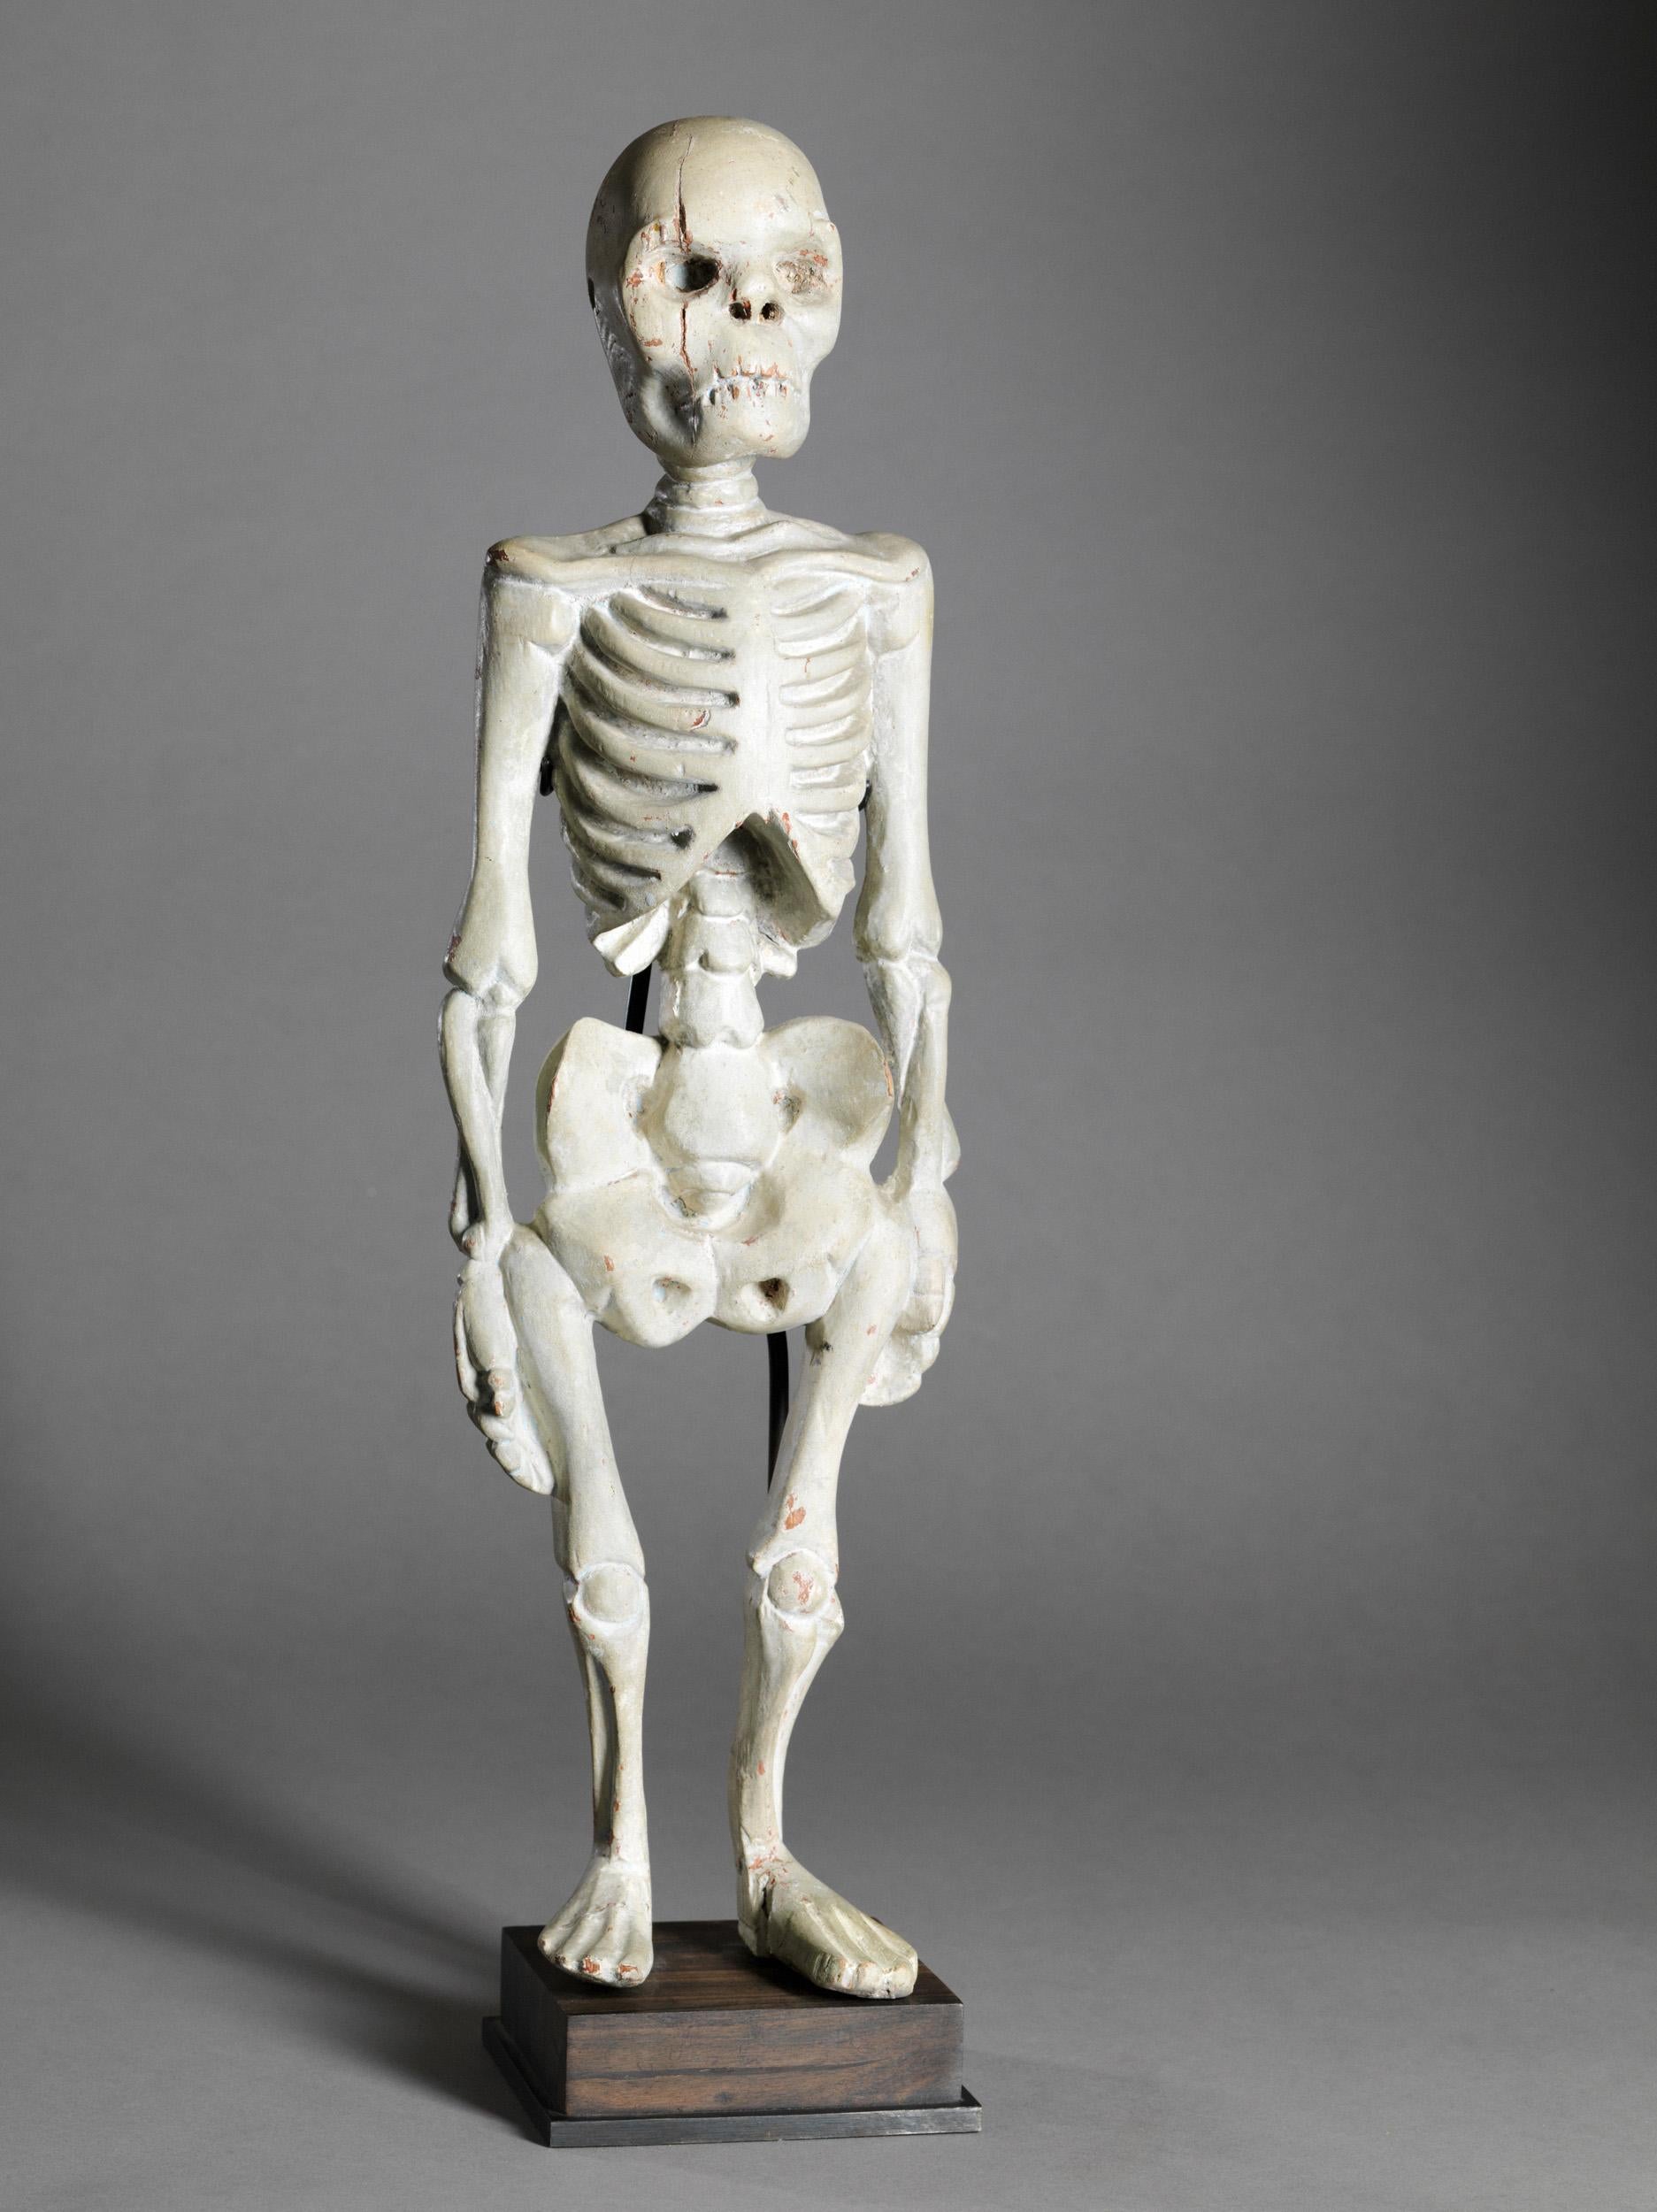 Squelette humain debout en bois, Asie du Sud-Est - Art de Unknown